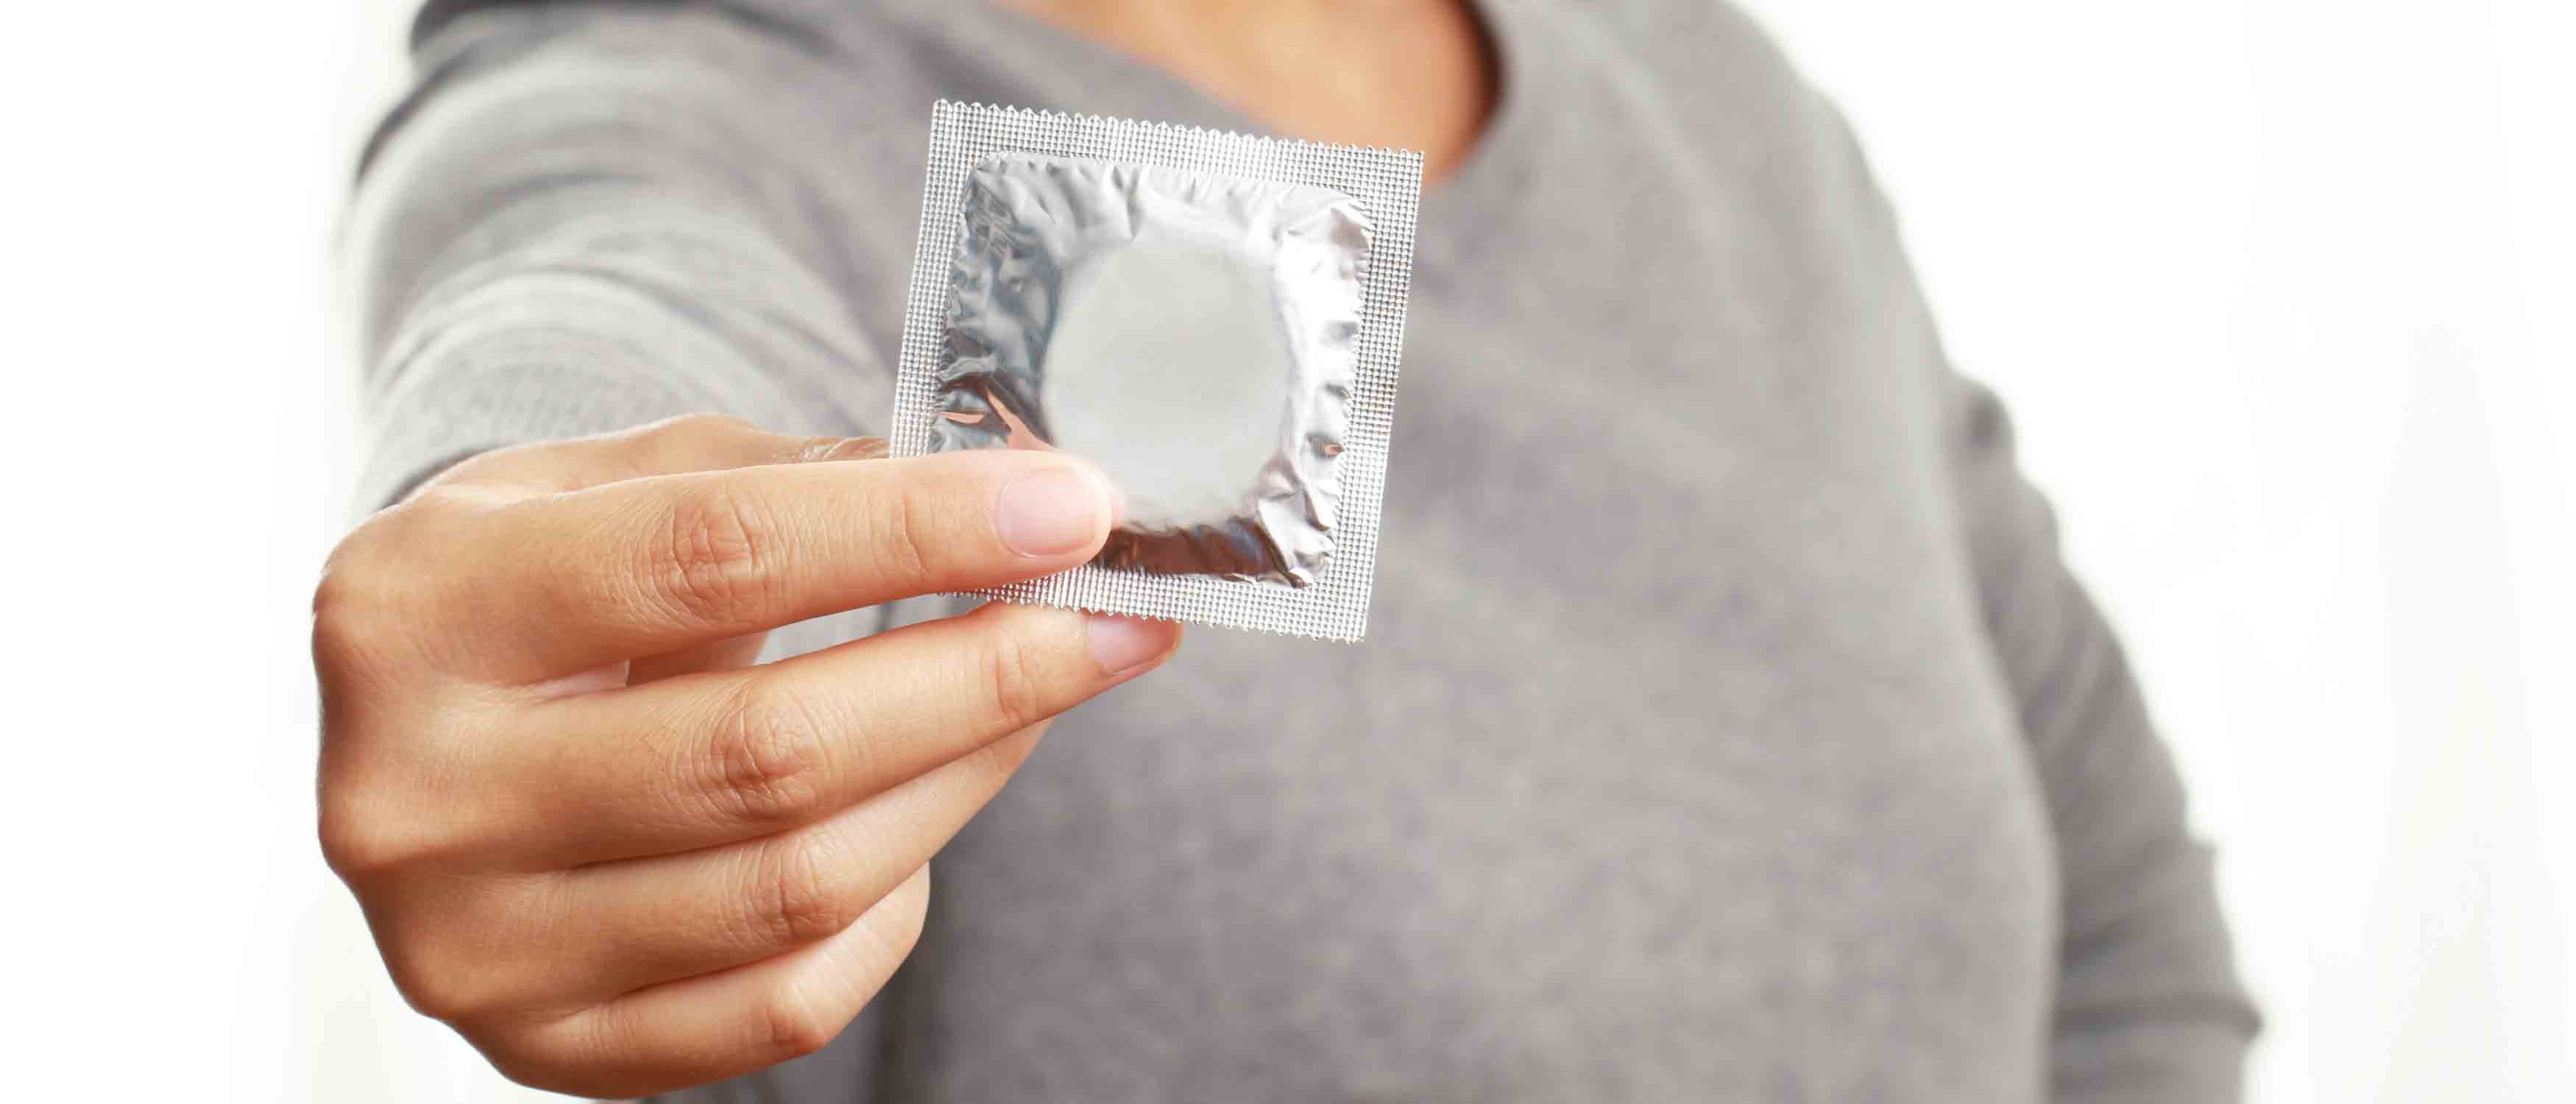 Pour se protéger de la chlamydia, le préservatif reste la seule option